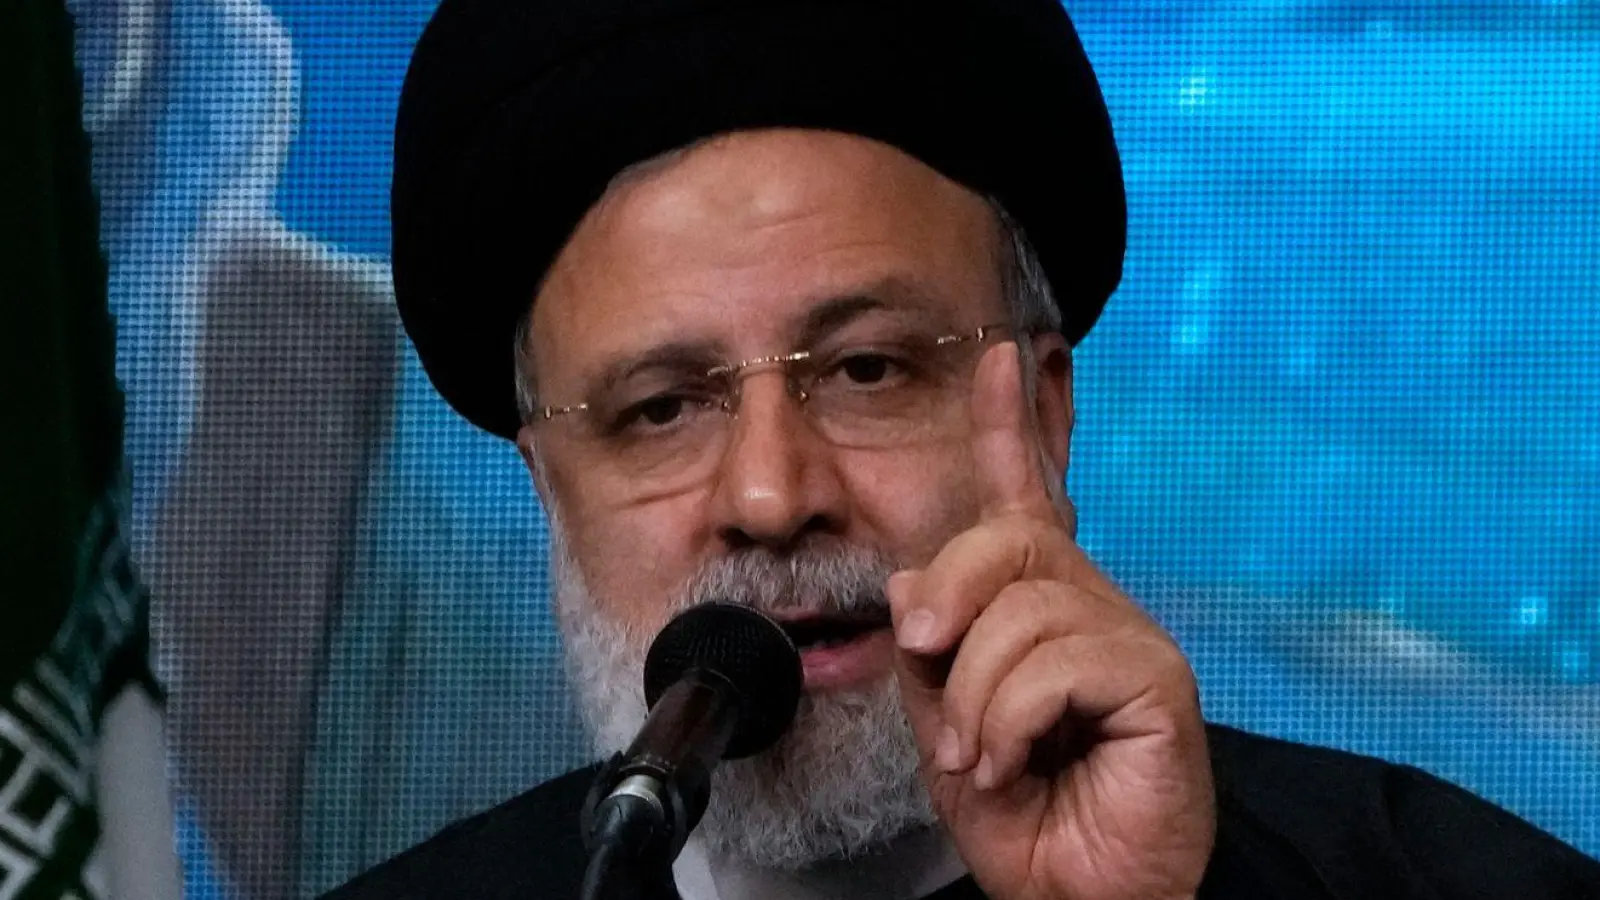 Der iranische Präsident Ebrahim Raisi hat eine entschiedene Reaktion angekündigt. Die Staatsführung verurteilte die Attacke aufs Schärfste, vermied aber Schuldzuweisungen. (Foto: Vahid Salemi/AP/dpa)